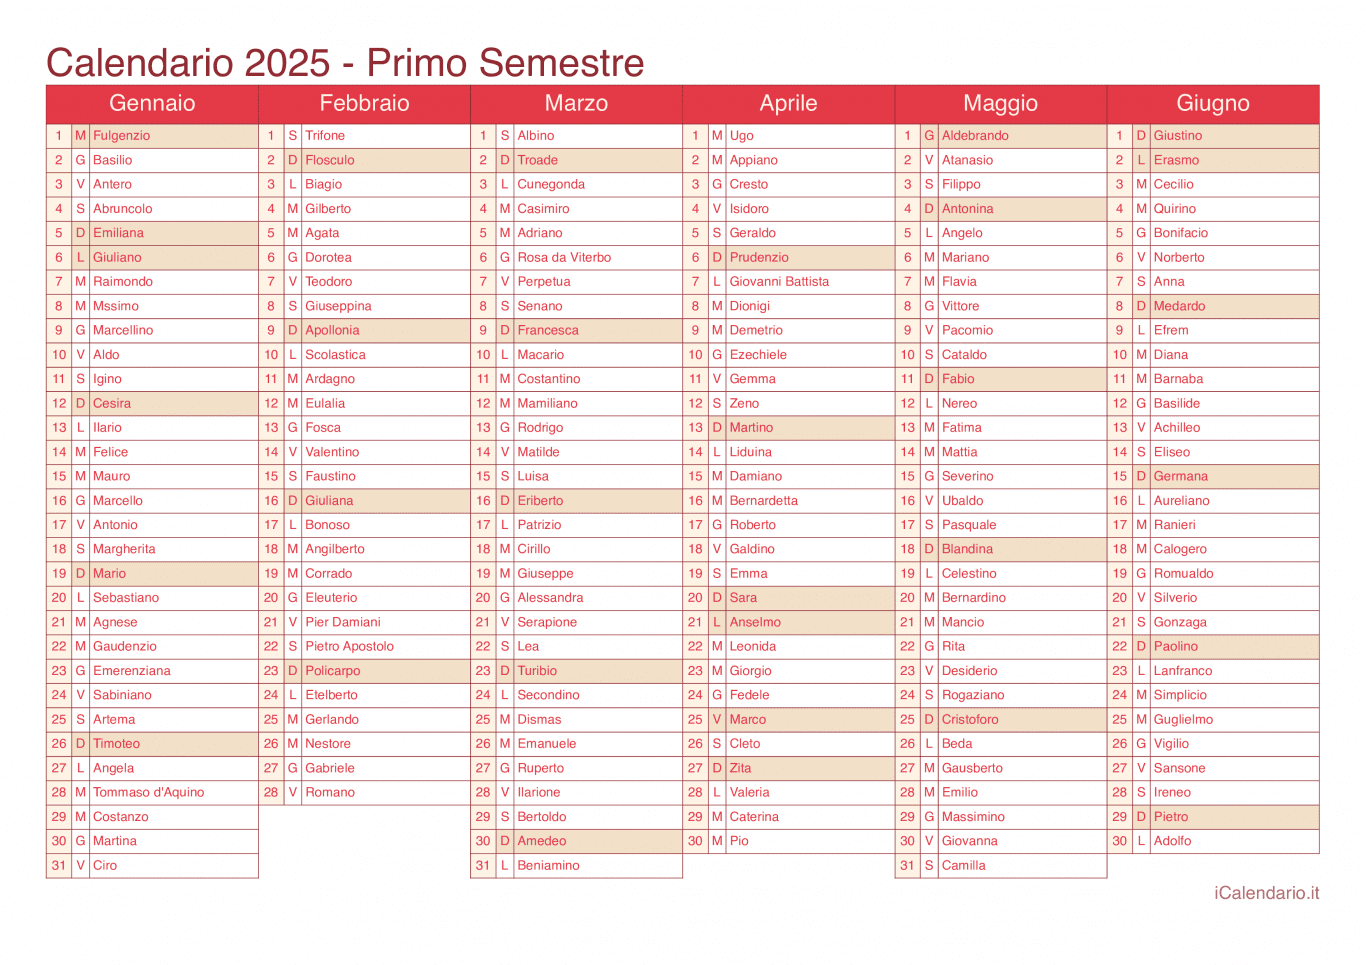 Calendario semestrale 2025 con santi e festivi - Cherry